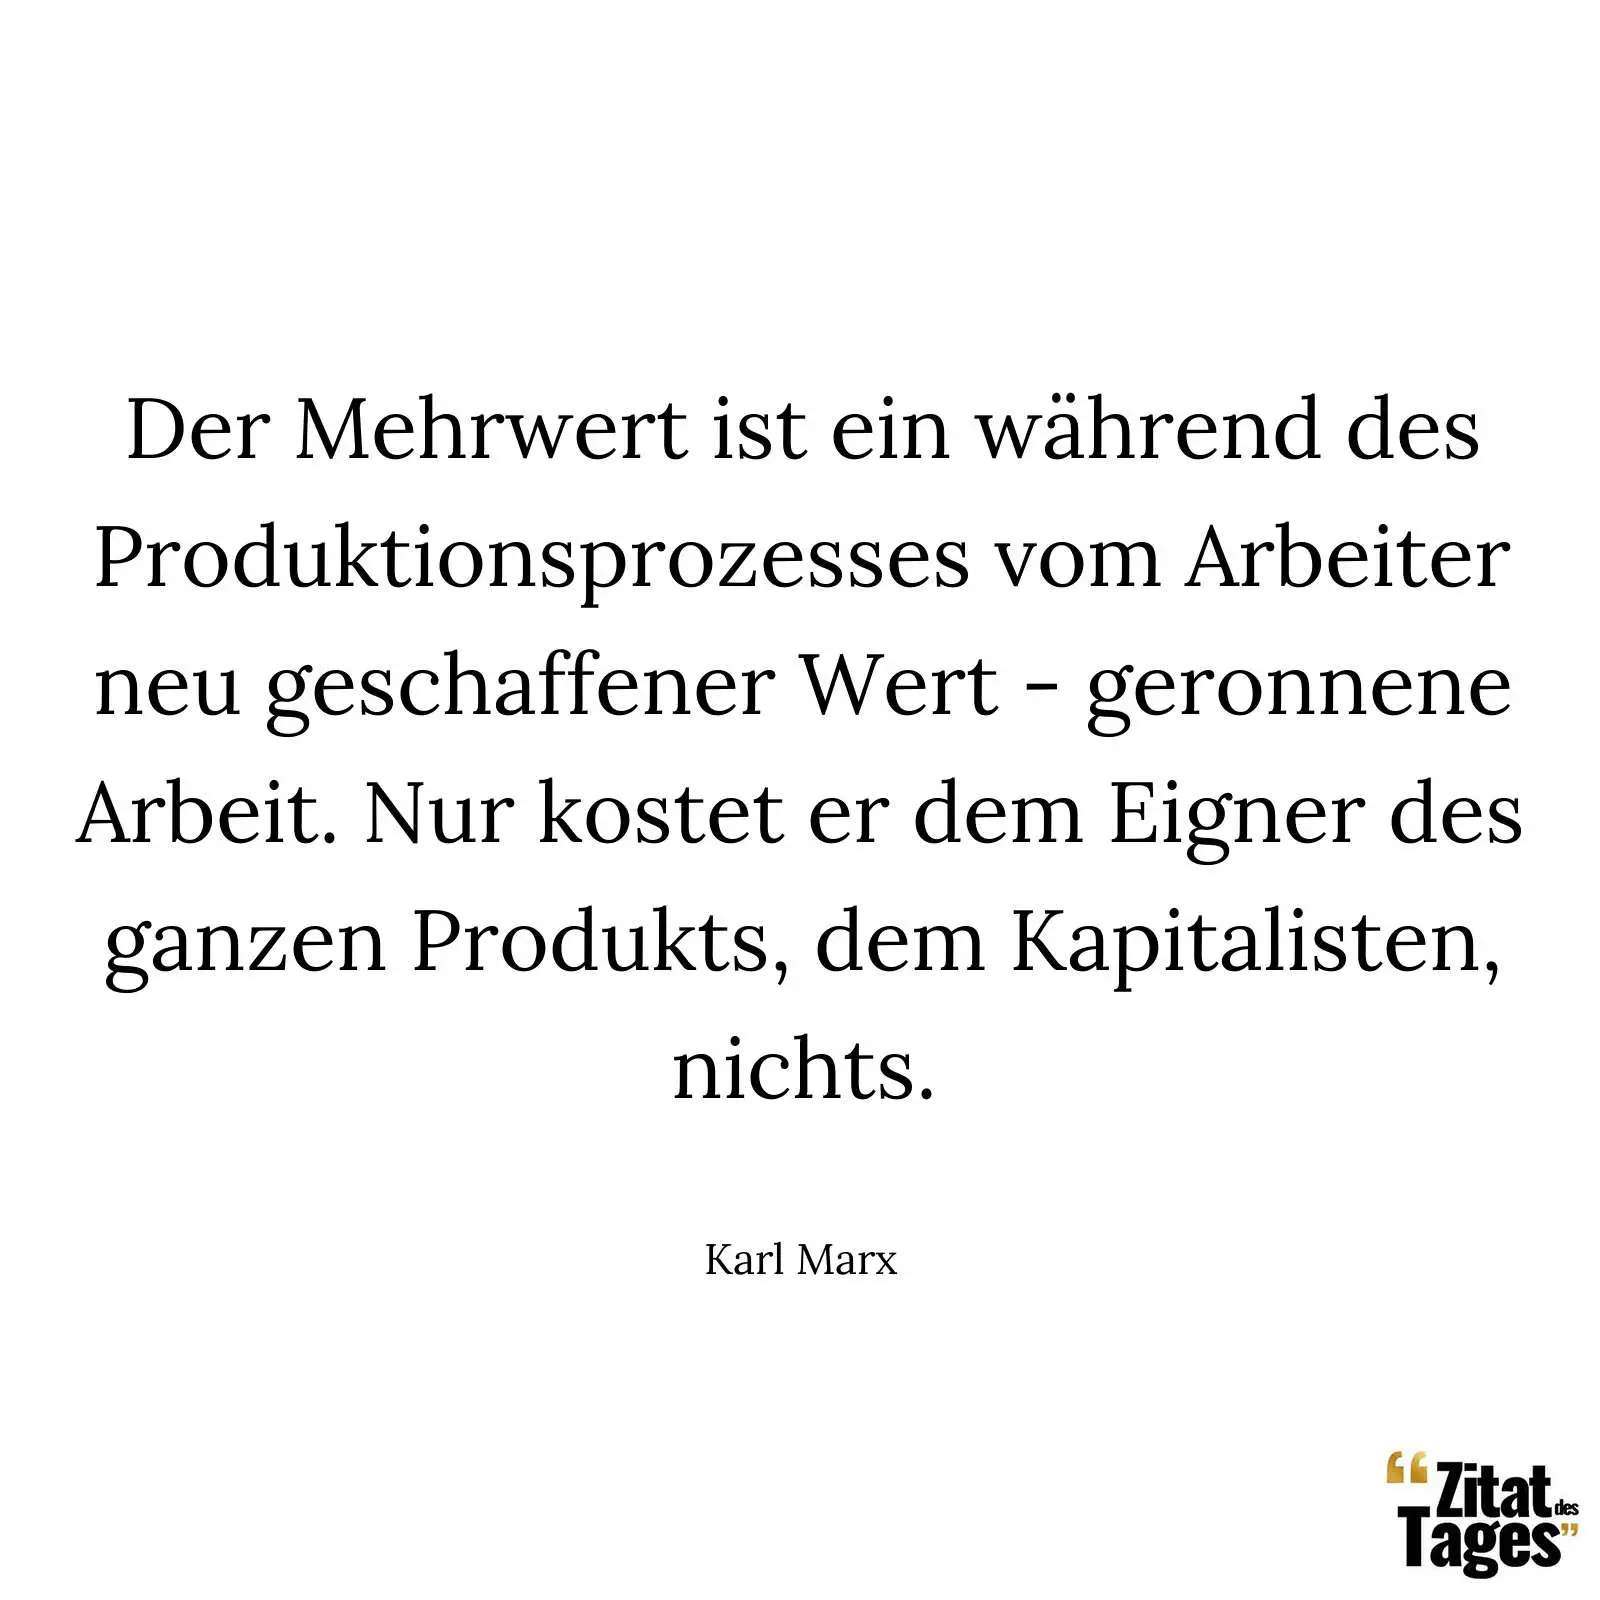 Der Mehrwert ist ein während des Produktionsprozesses vom Arbeiter neu geschaffener Wert - geronnene Arbeit. Nur kostet er dem Eigner des ganzen Produkts, dem Kapitalisten, nichts. - Karl Marx